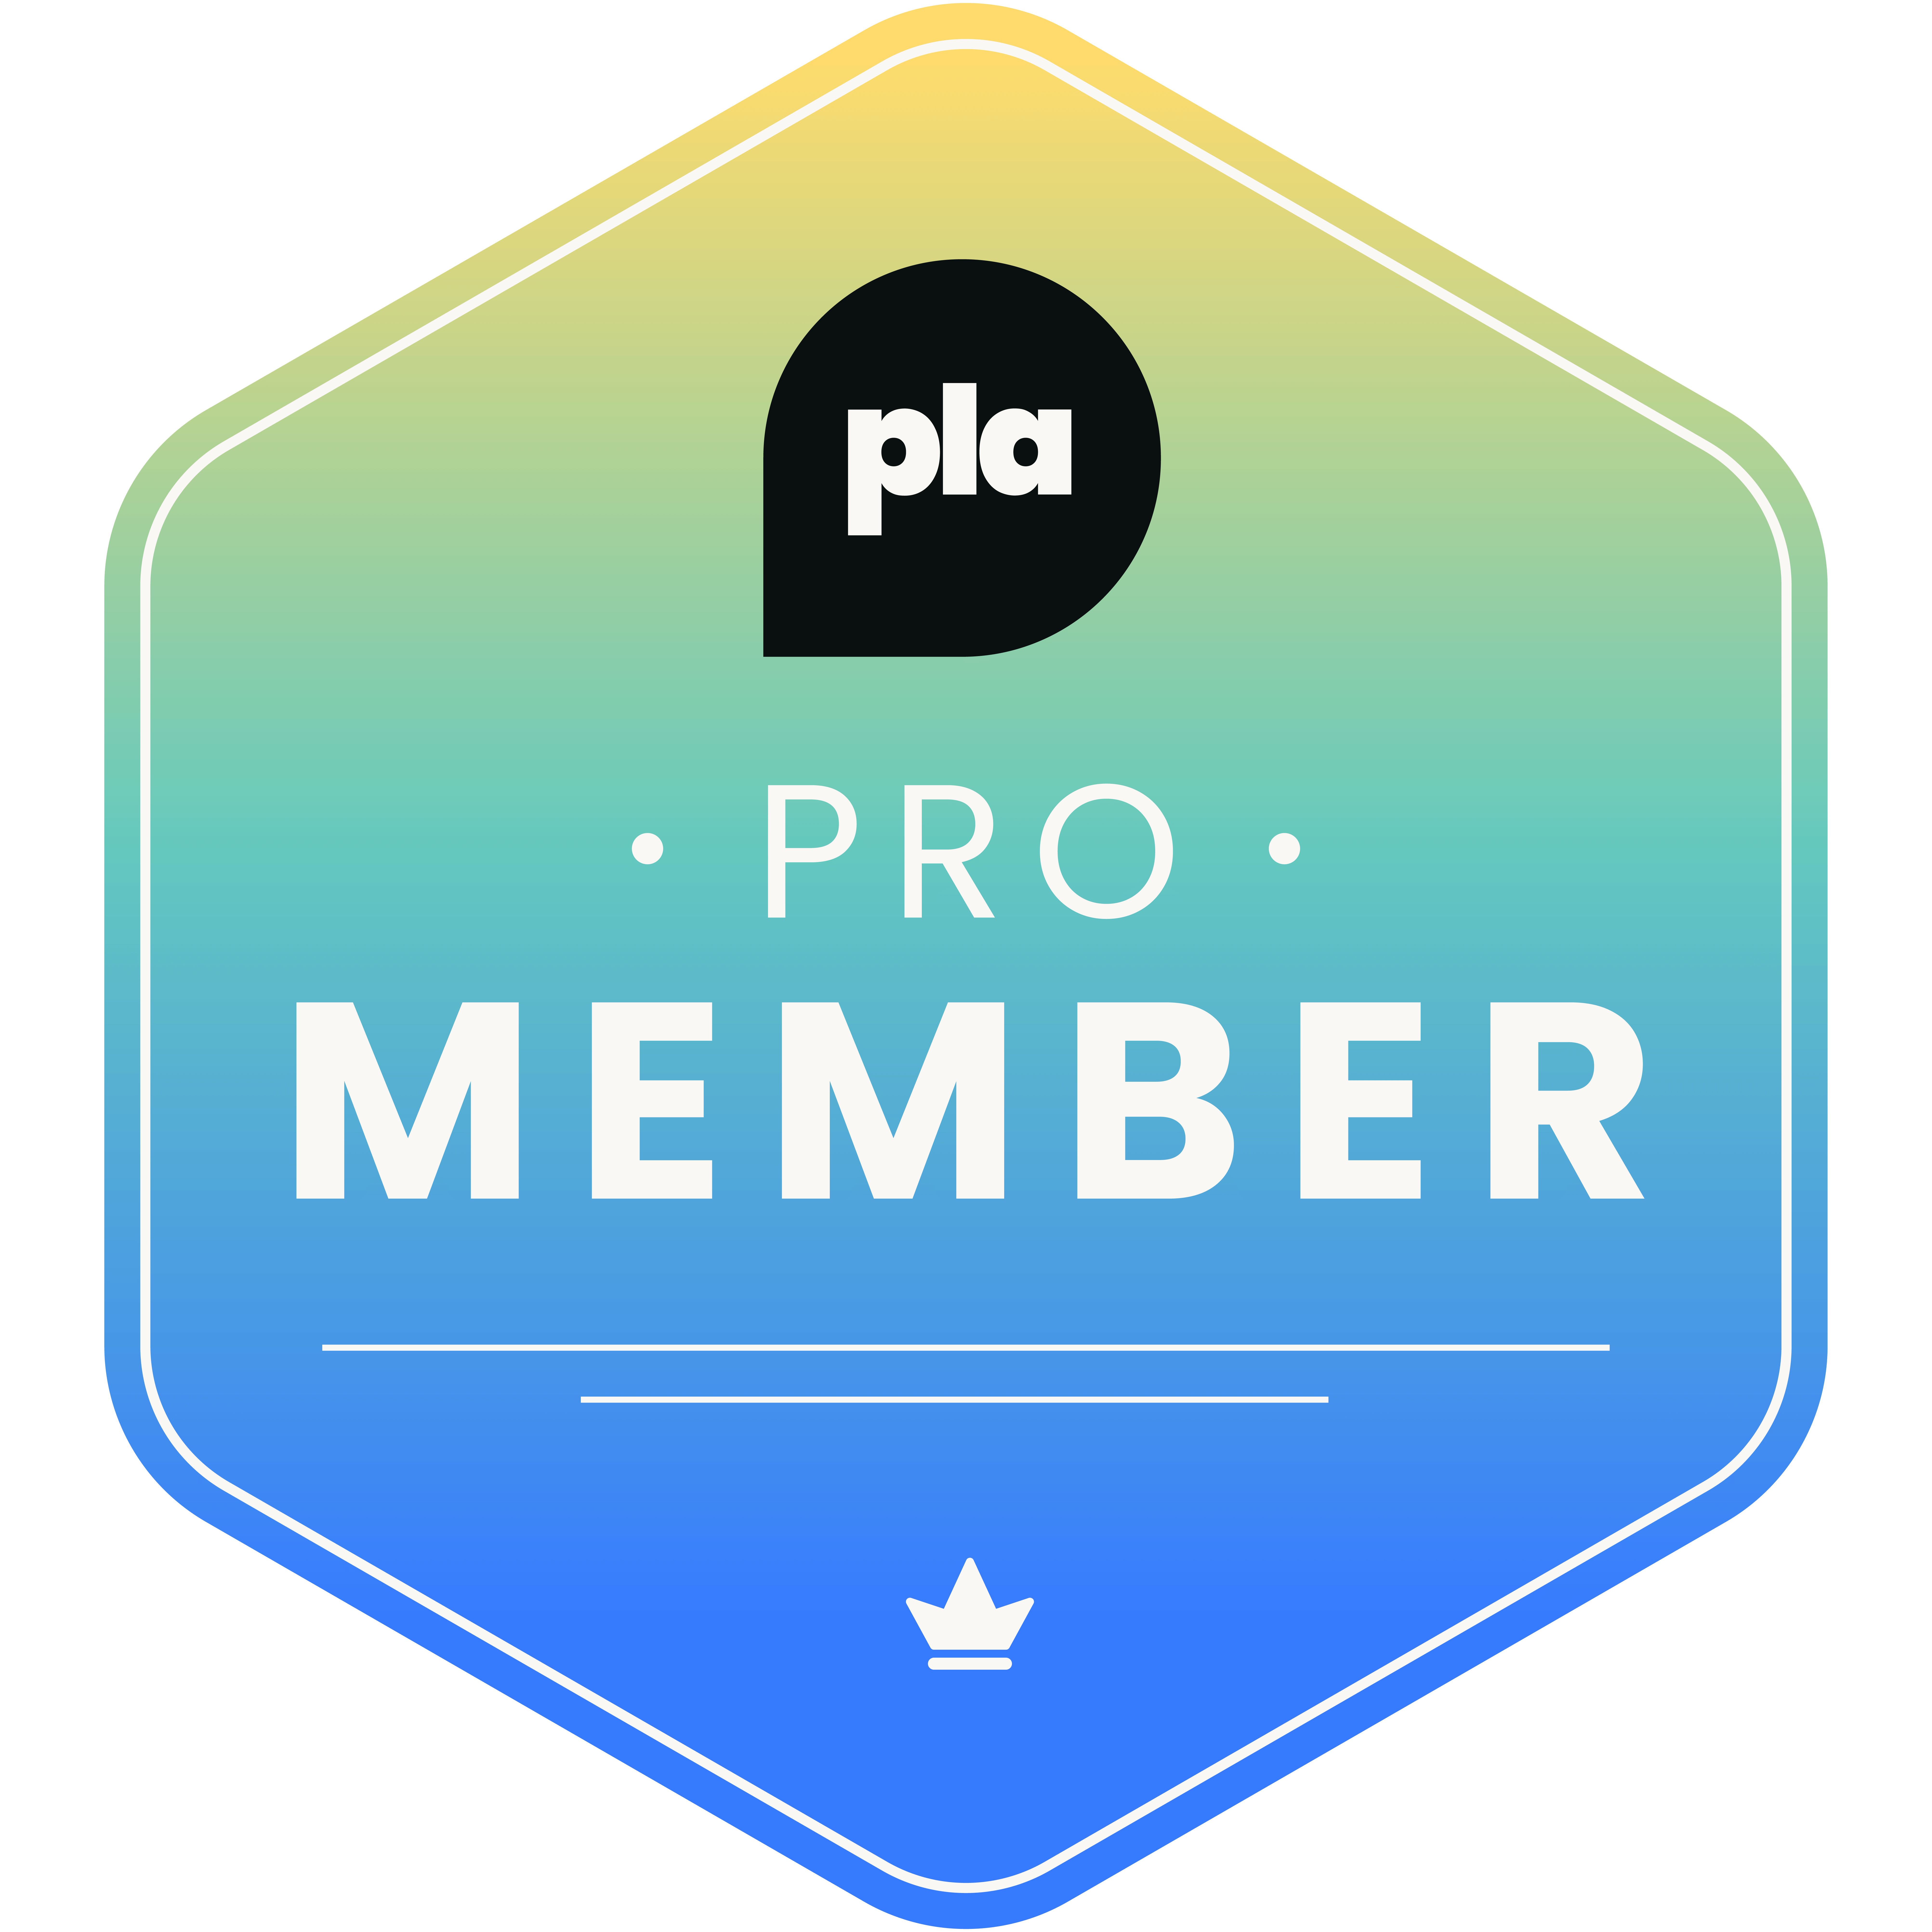 product led alliance pro membership badge